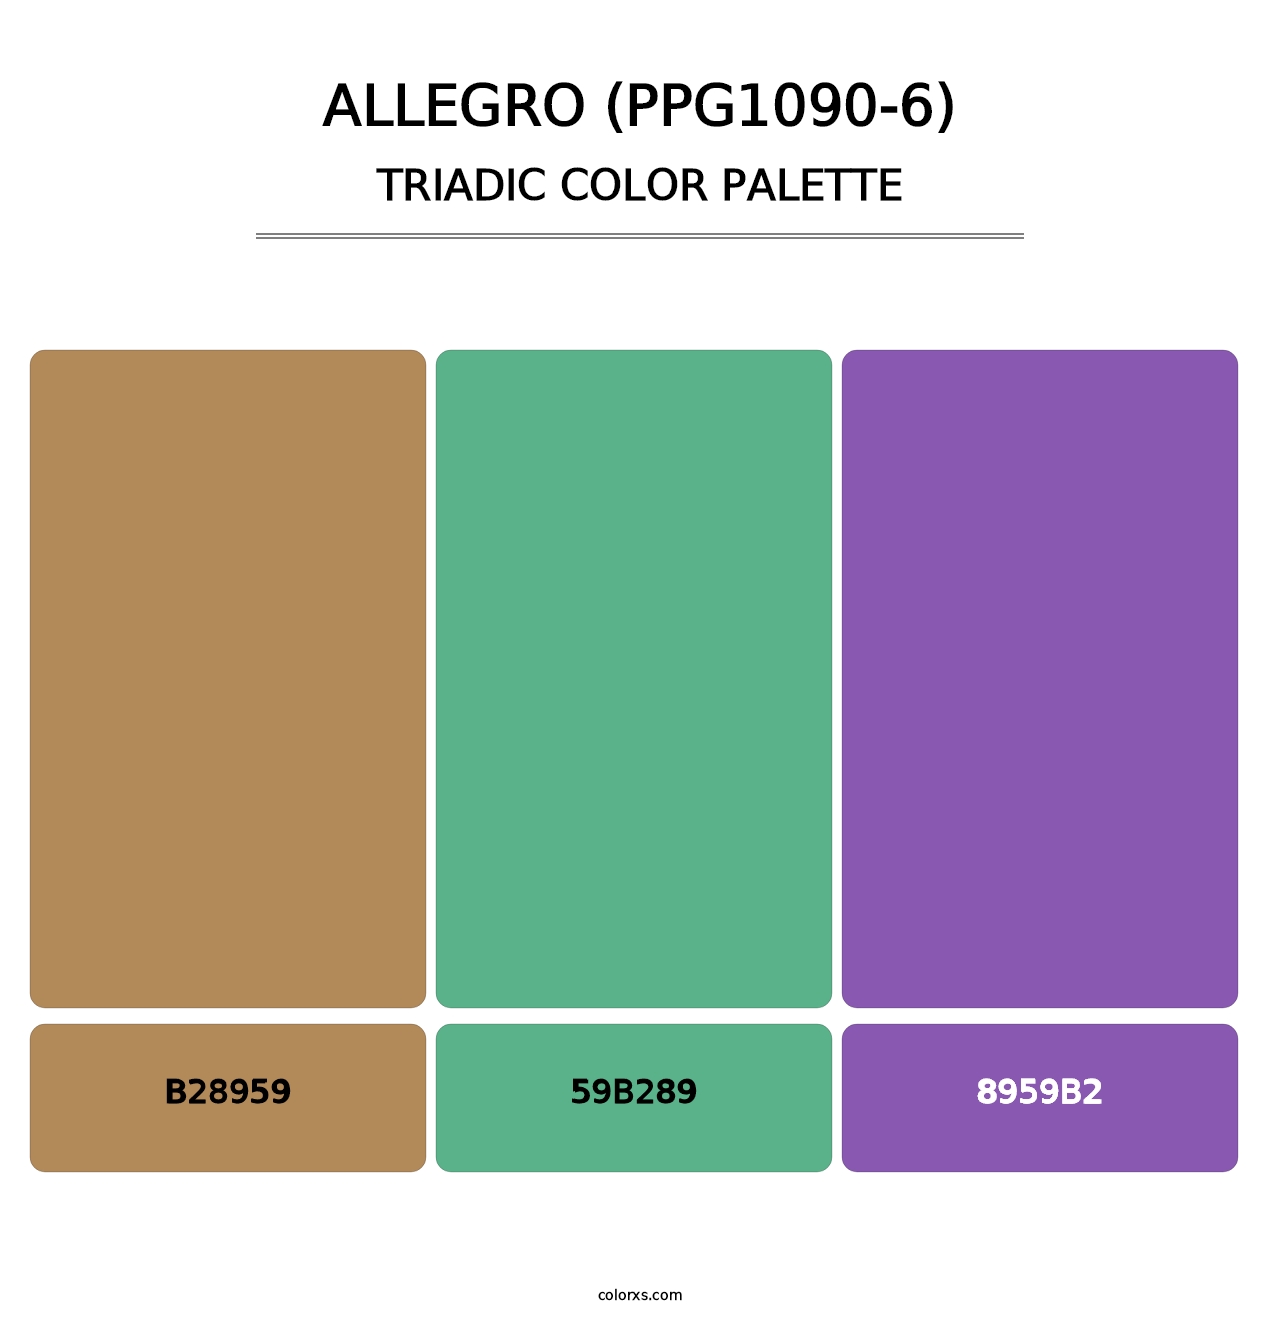 Allegro (PPG1090-6) - Triadic Color Palette